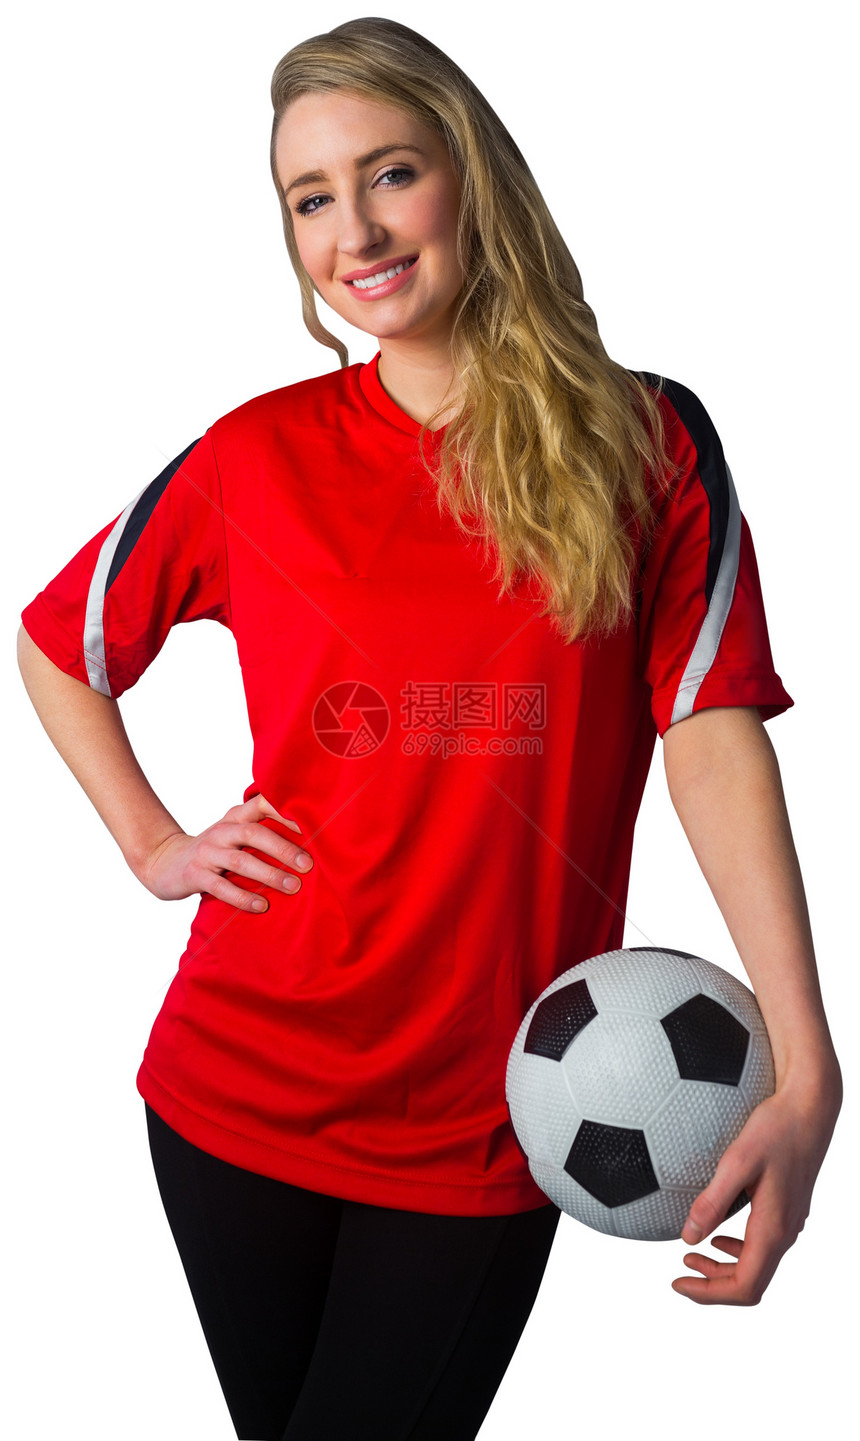 红红色的漂亮足球球迷世界胜利扇子喜悦活力杯子欣快感球衣影棚女士图片